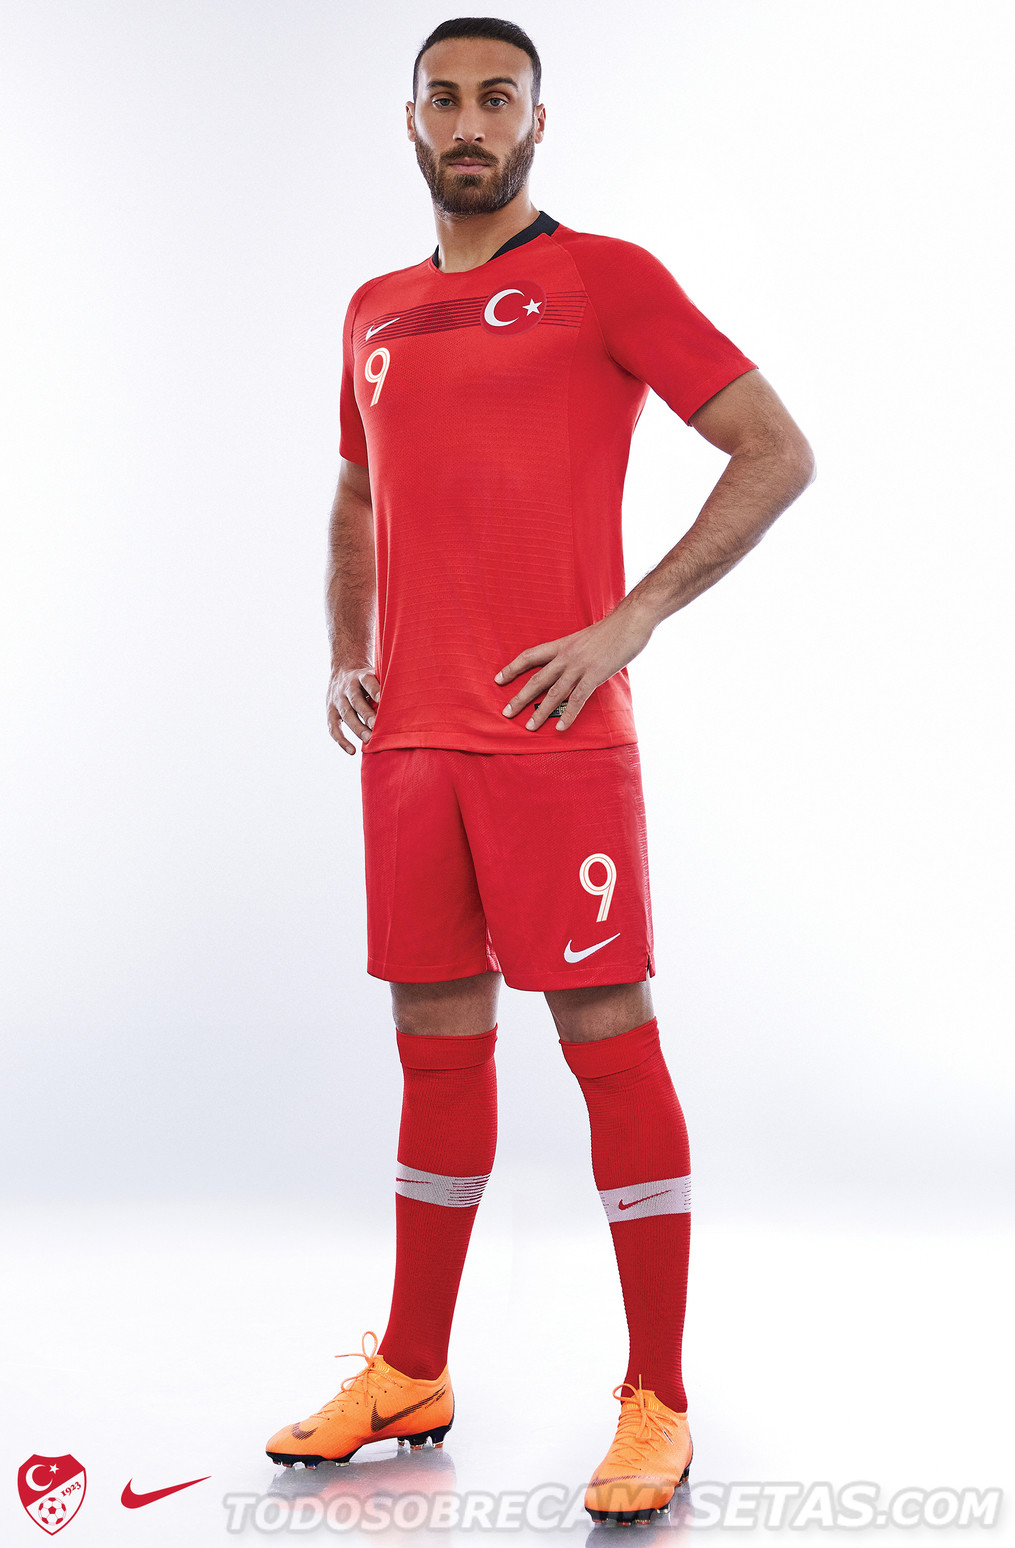 Turkey 2018 Nike Kits